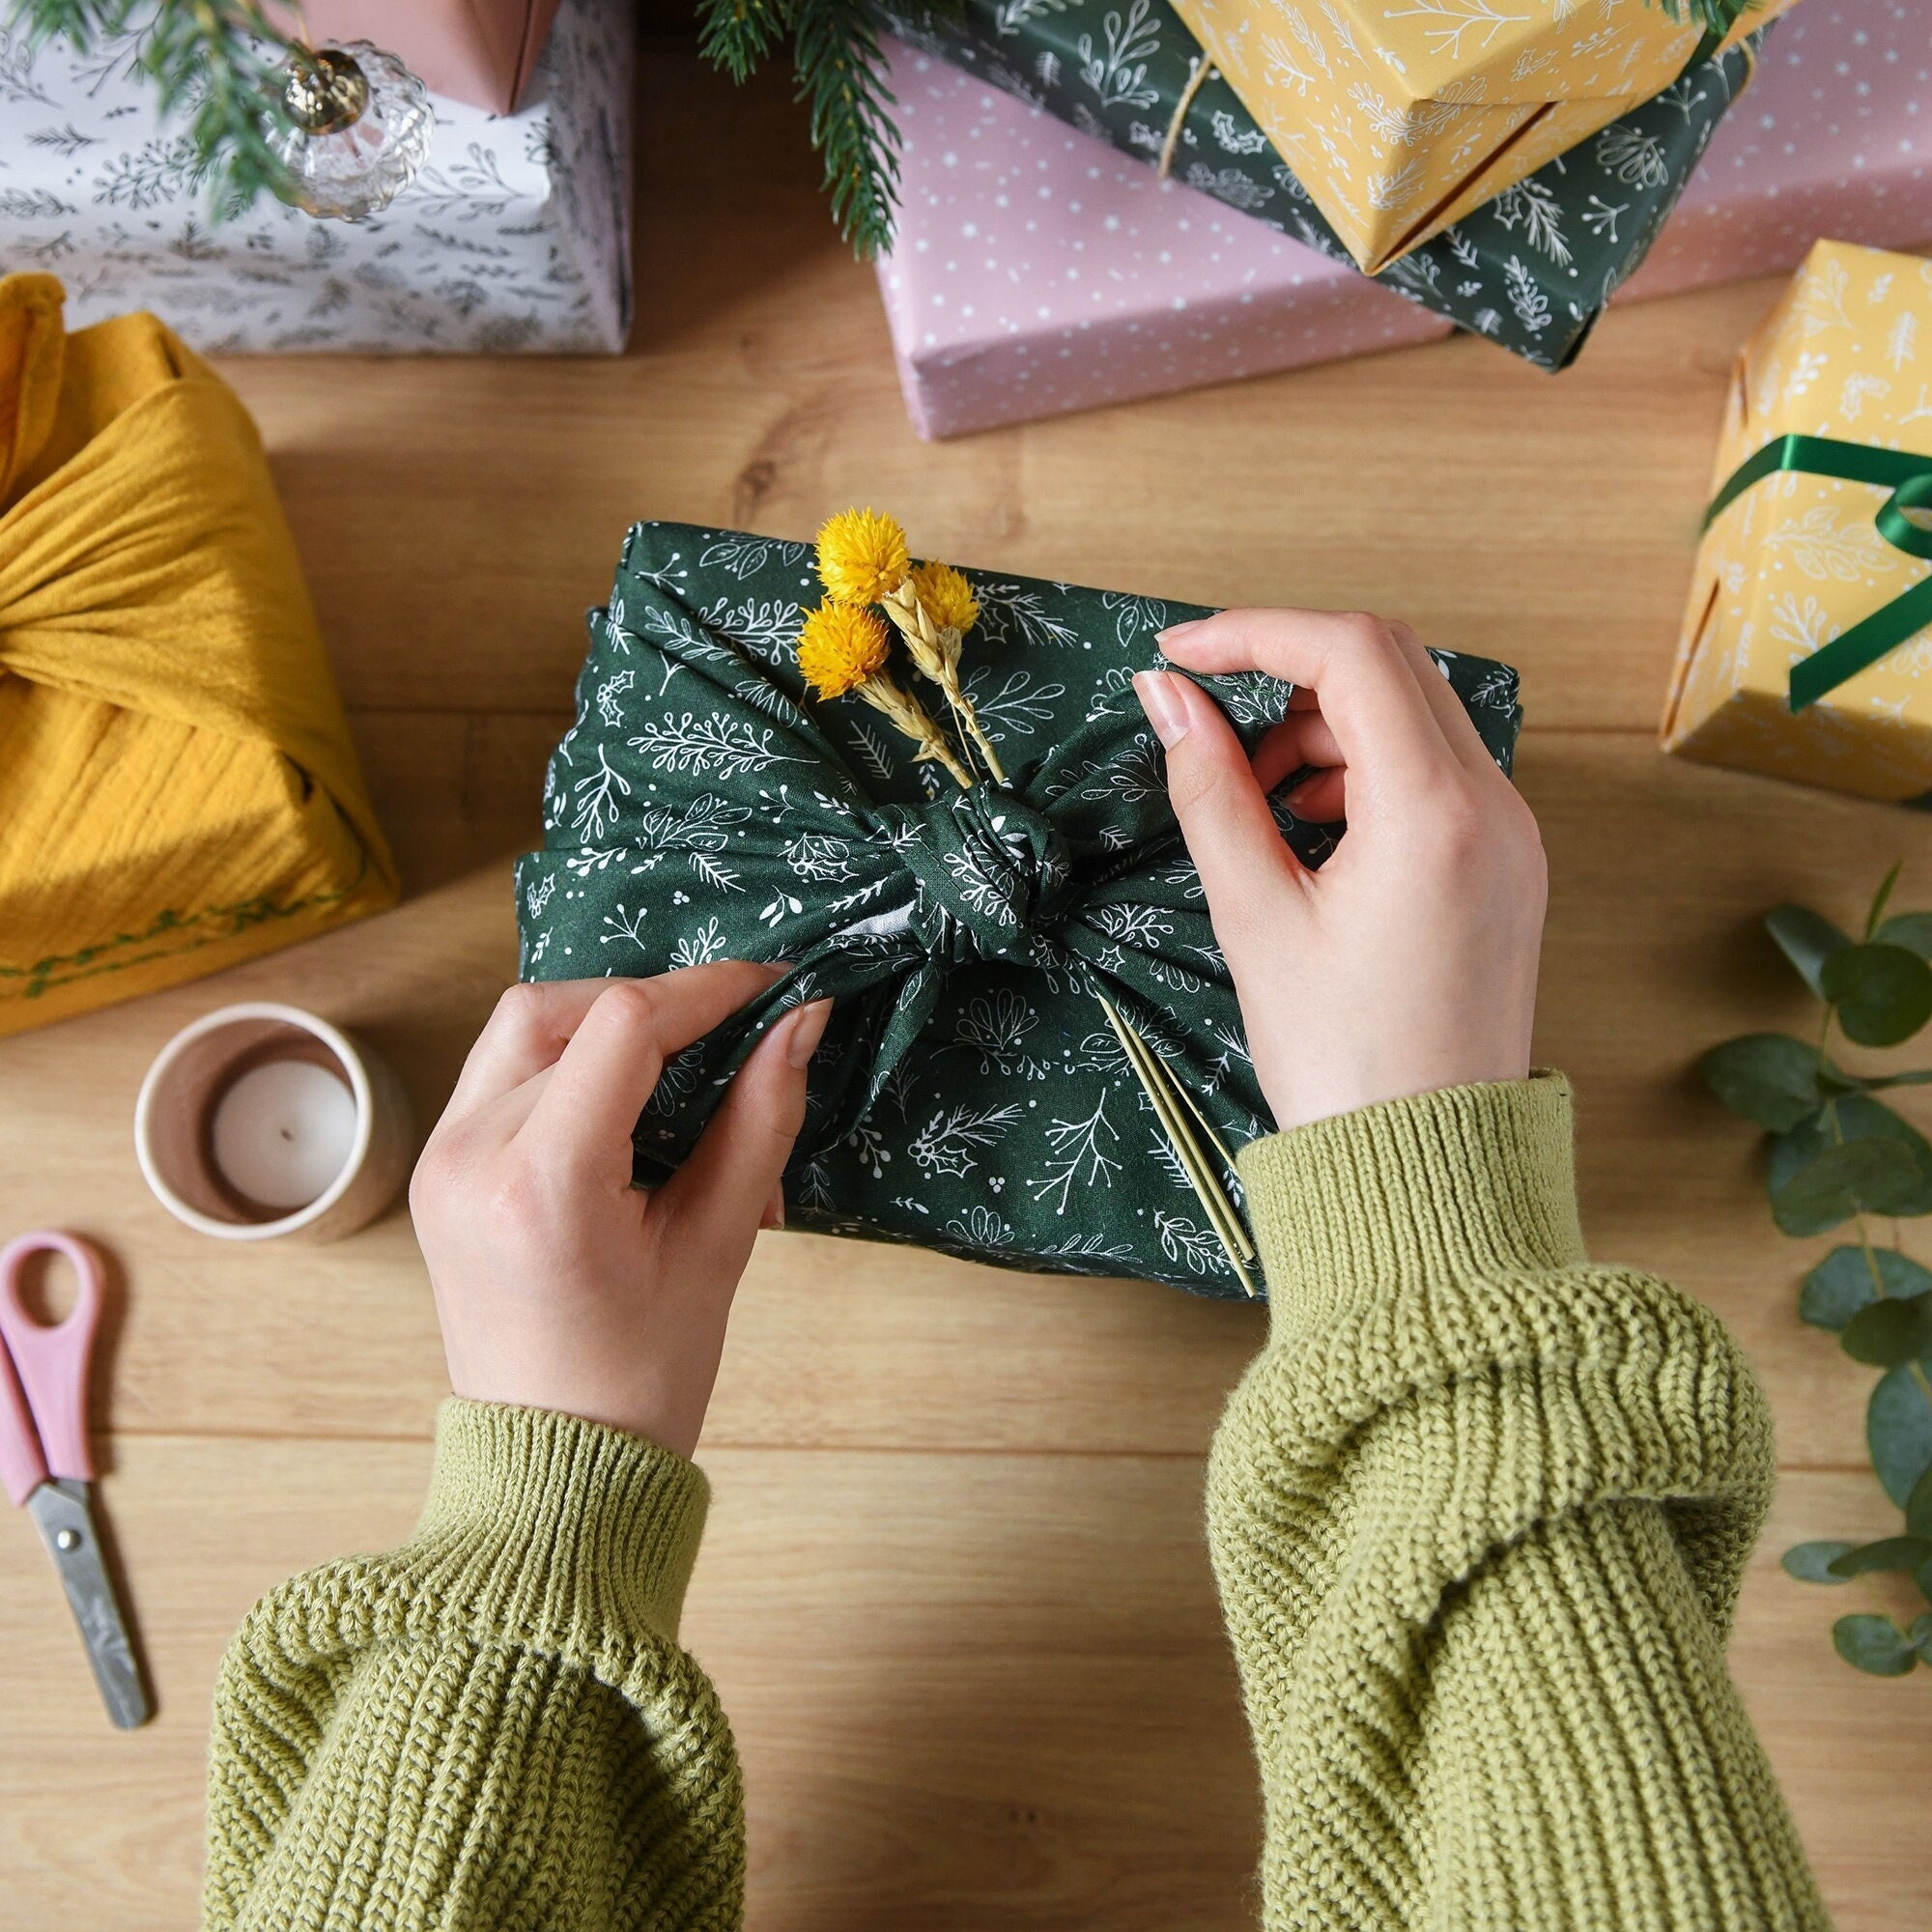 Bricolage de Noël : des emballages cadeaux au style végétal - On